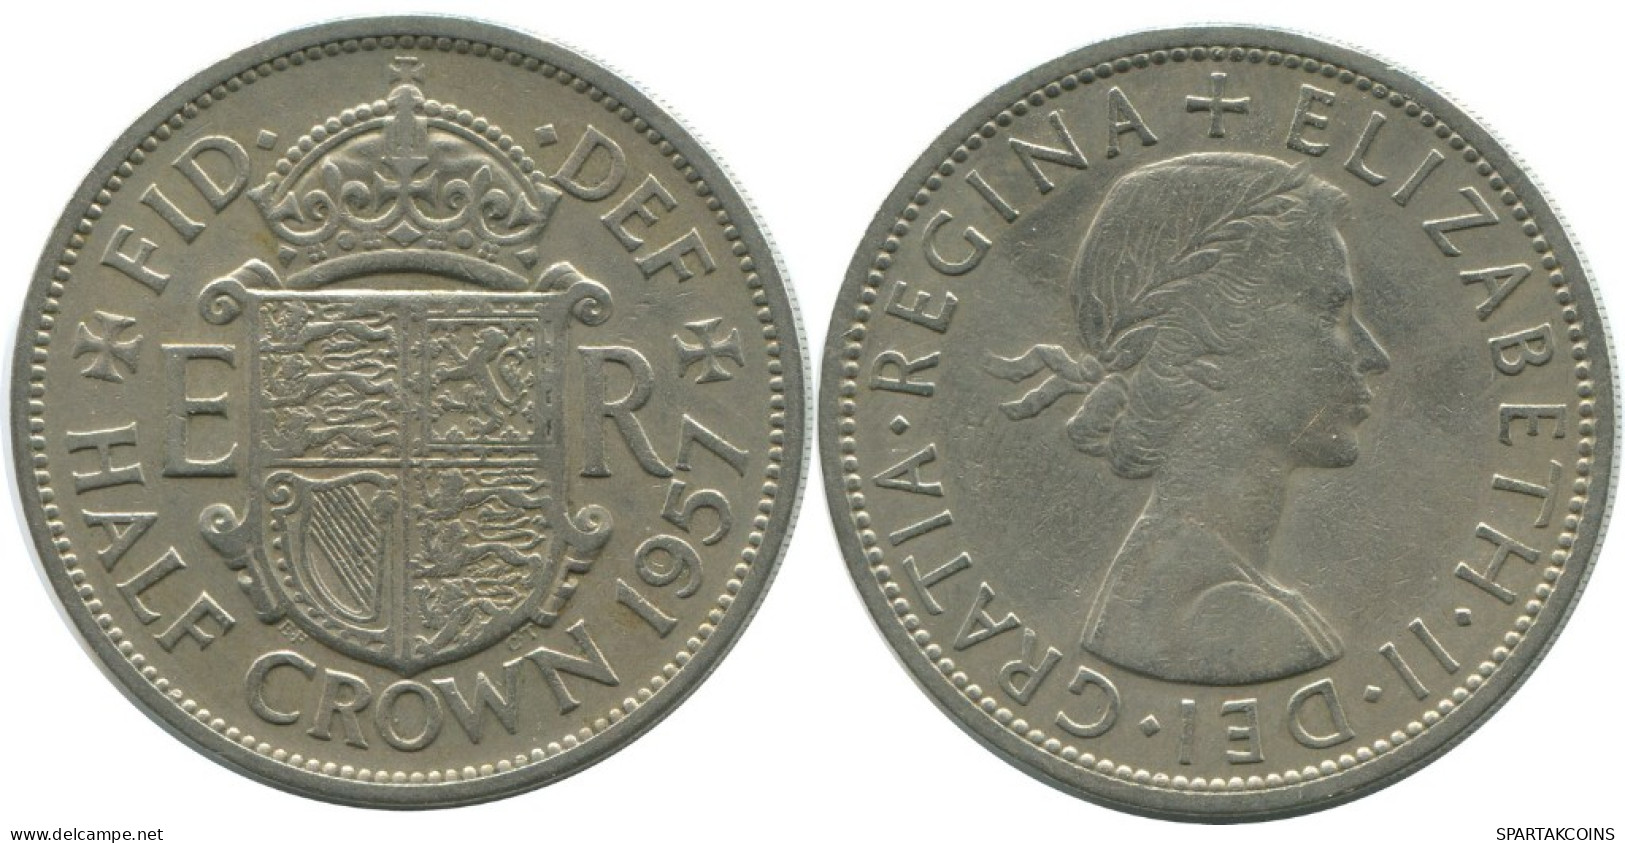 HALF CROWN 1957 UK GREAT BRITAIN Coin #AH016.1.U.A - K. 1/2 Crown